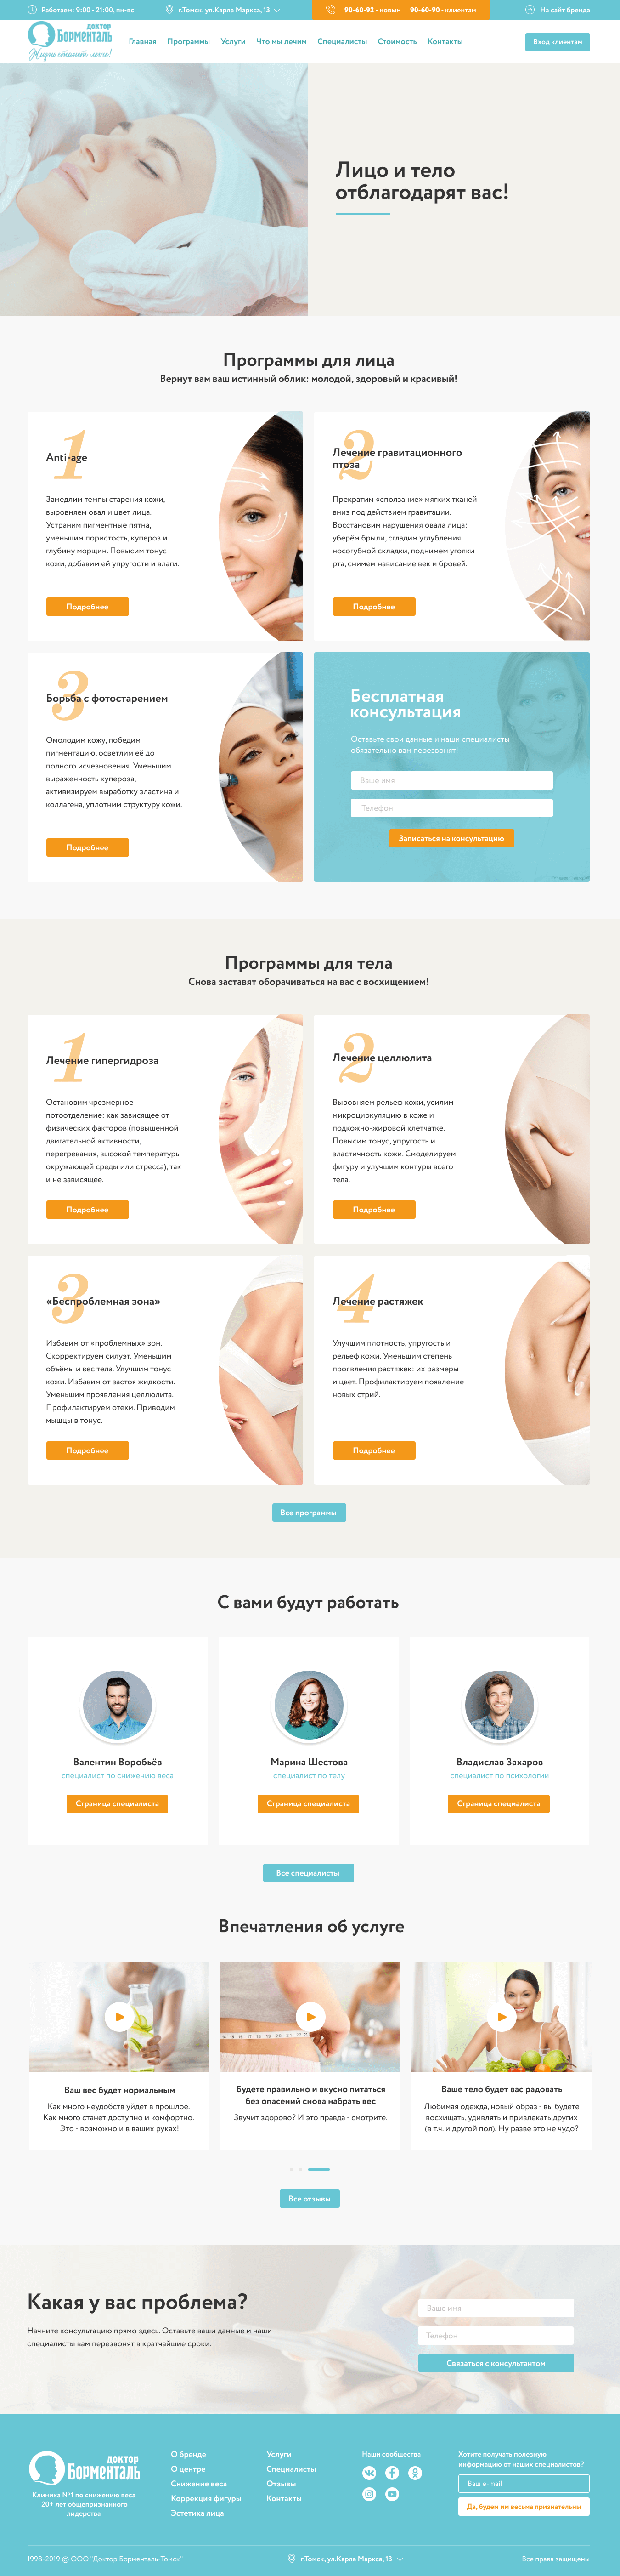 Макет страницы 'Программы косметологии'